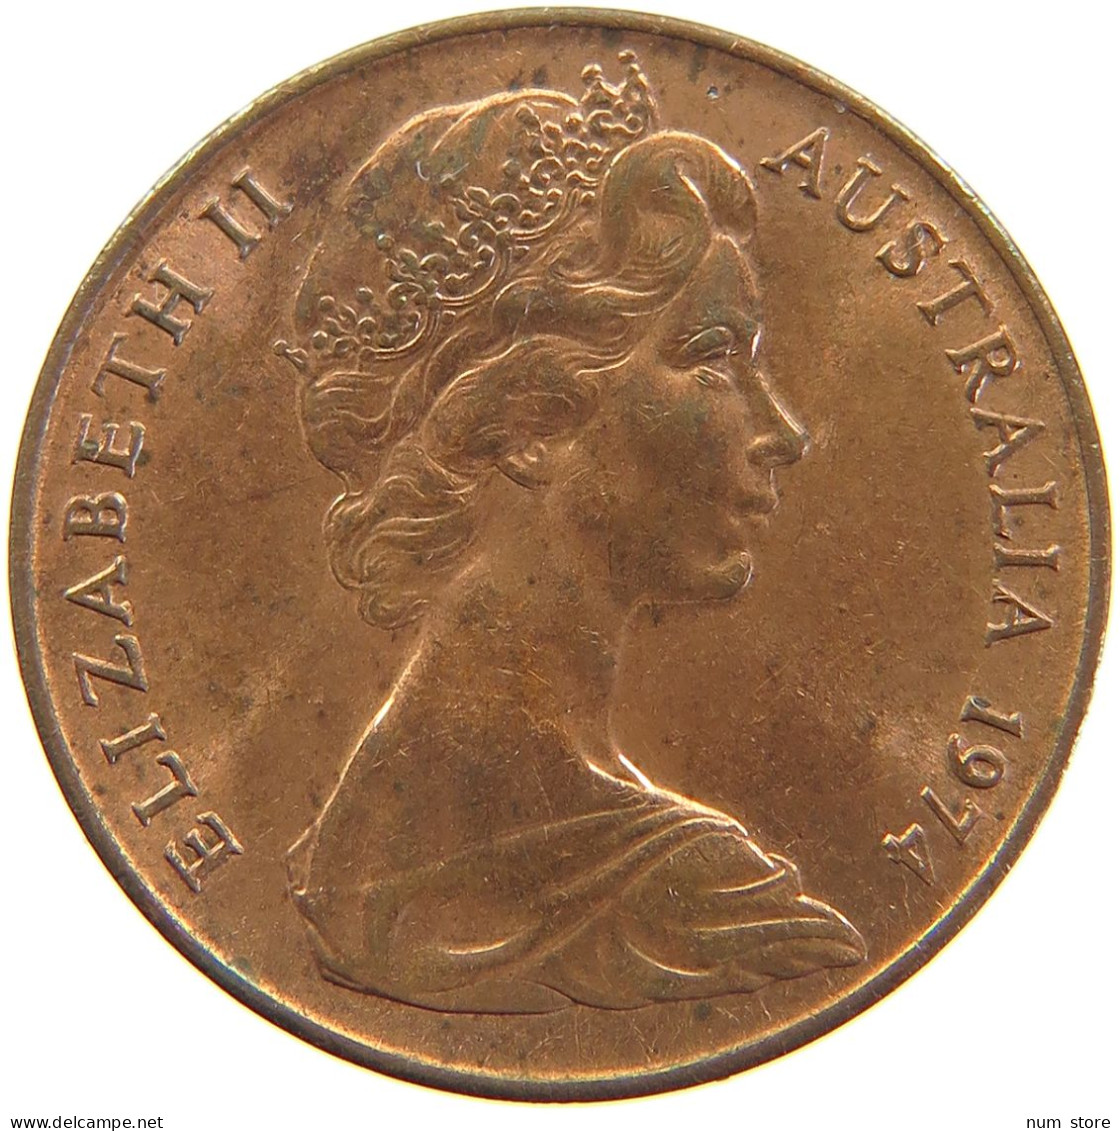 AUSTRALIA 2 CENTS 1974 #s105 0257 - 2 Cents